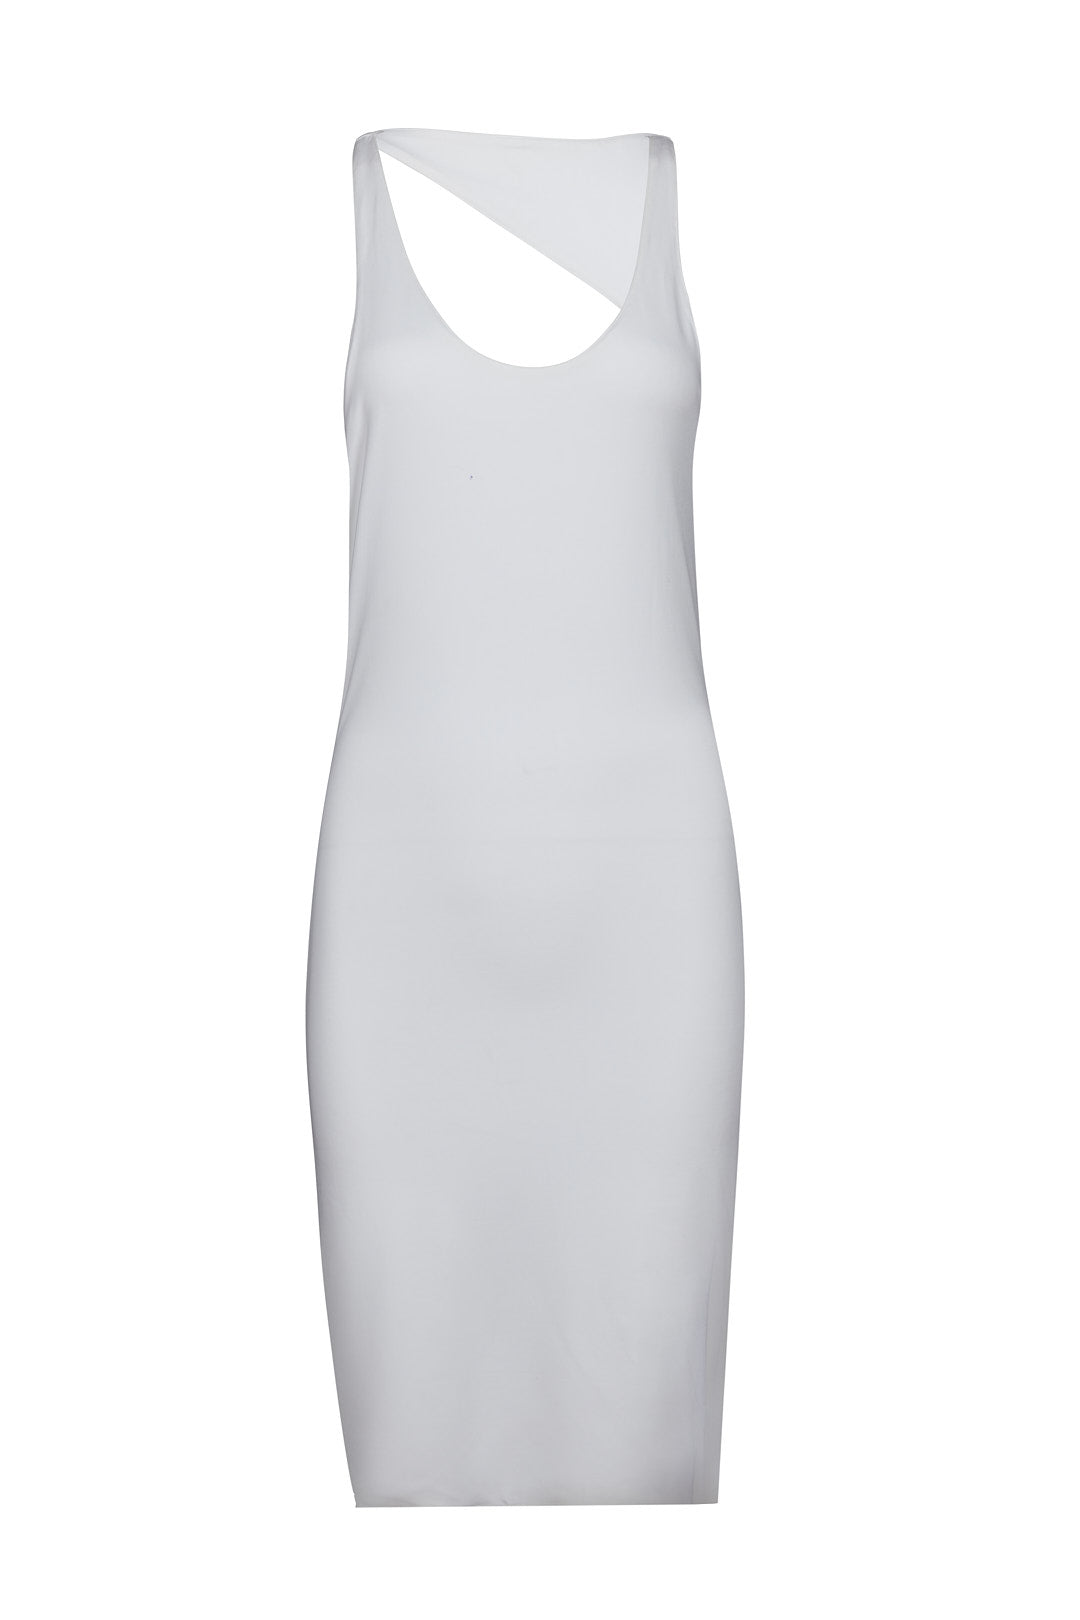 שמלת ערב גב פתוח צבע לבן-EVENING DRESS COLOR WHITE